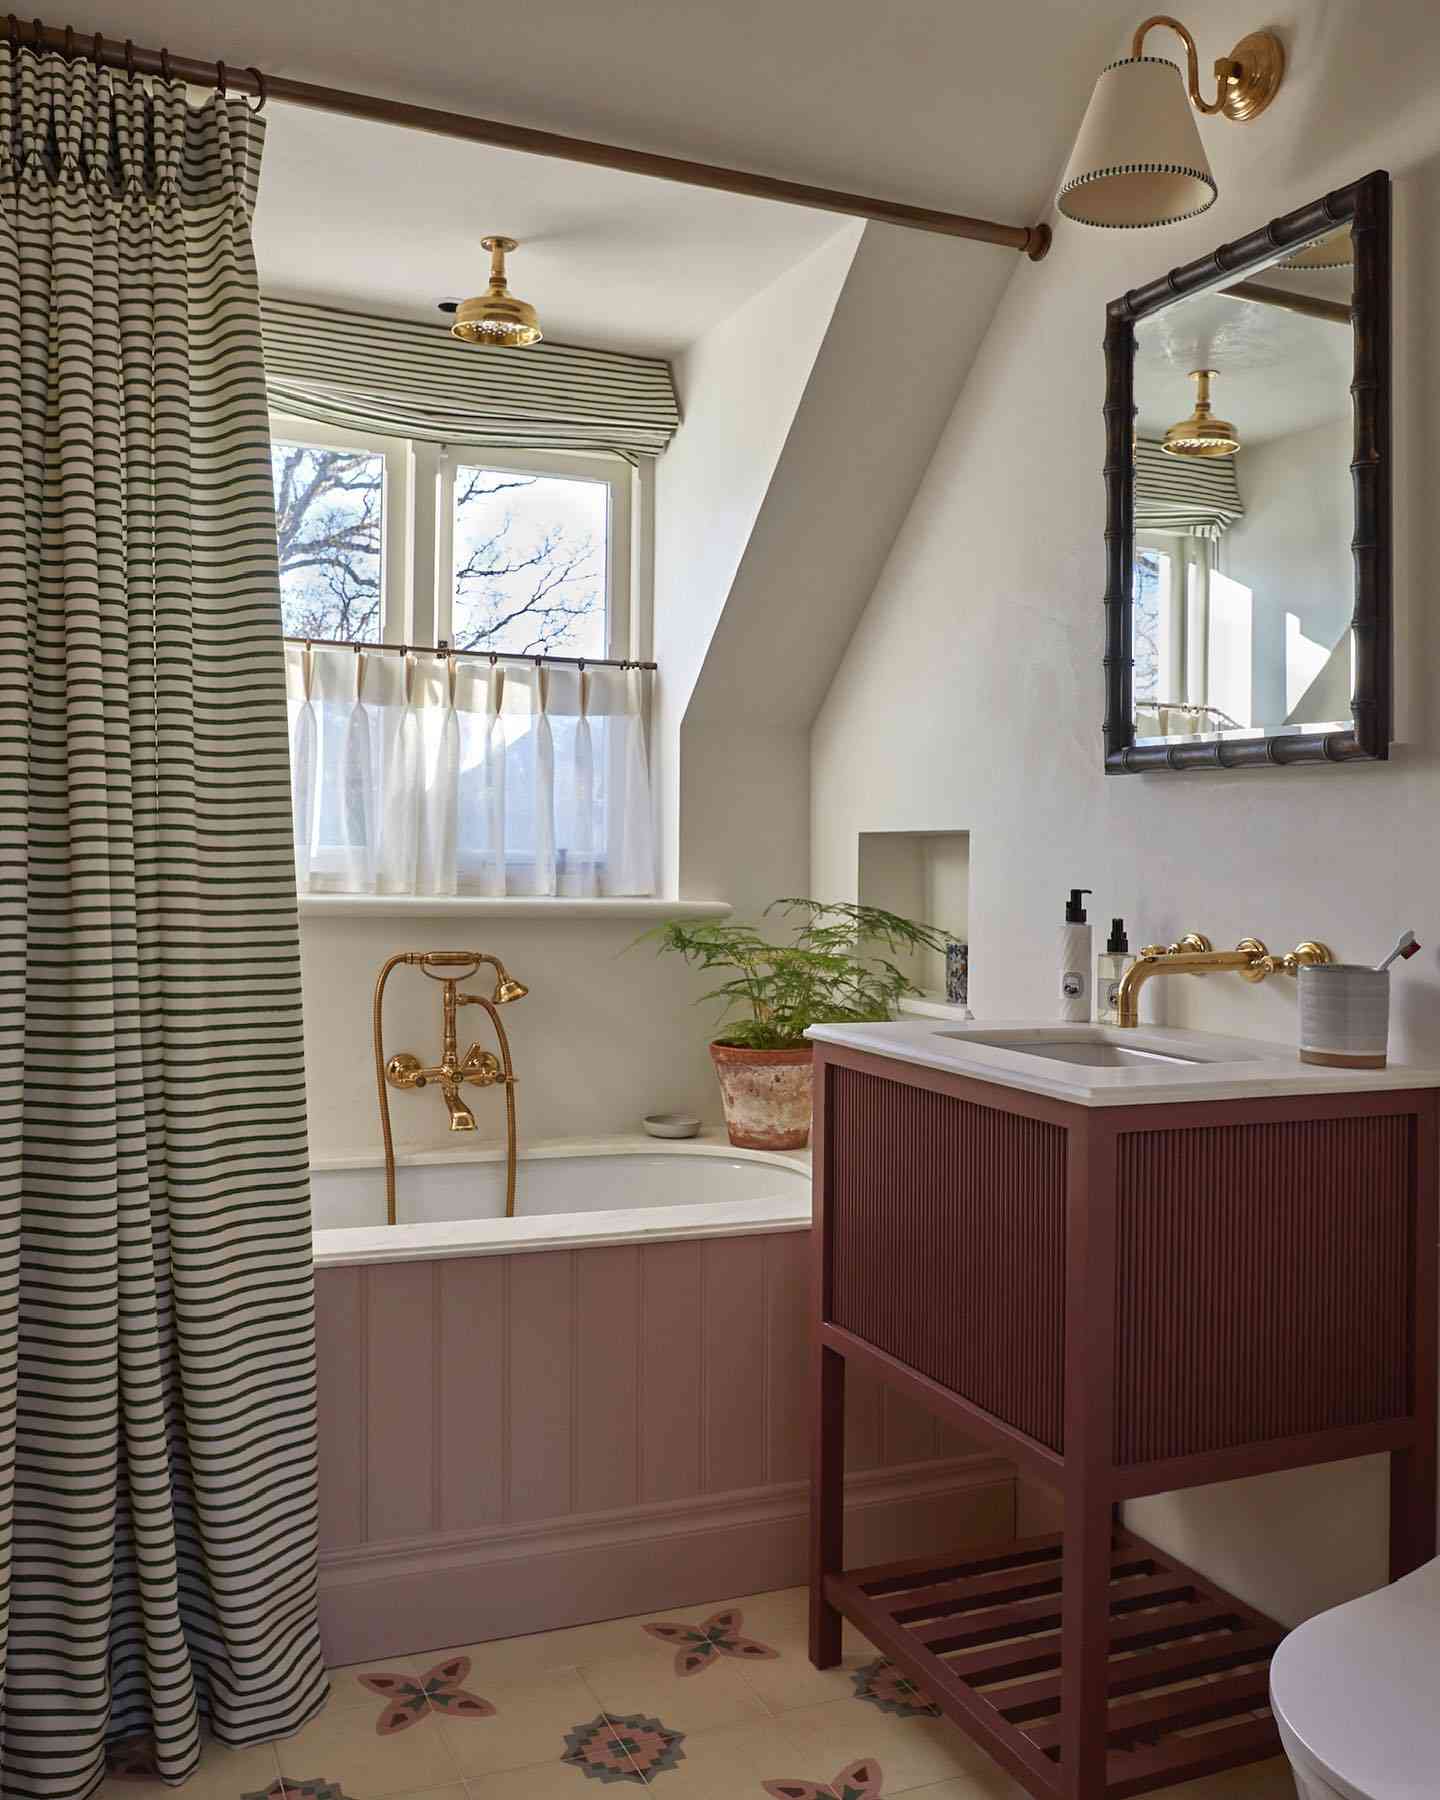 Baño con detalles dorados y cortina de ducha a rayas